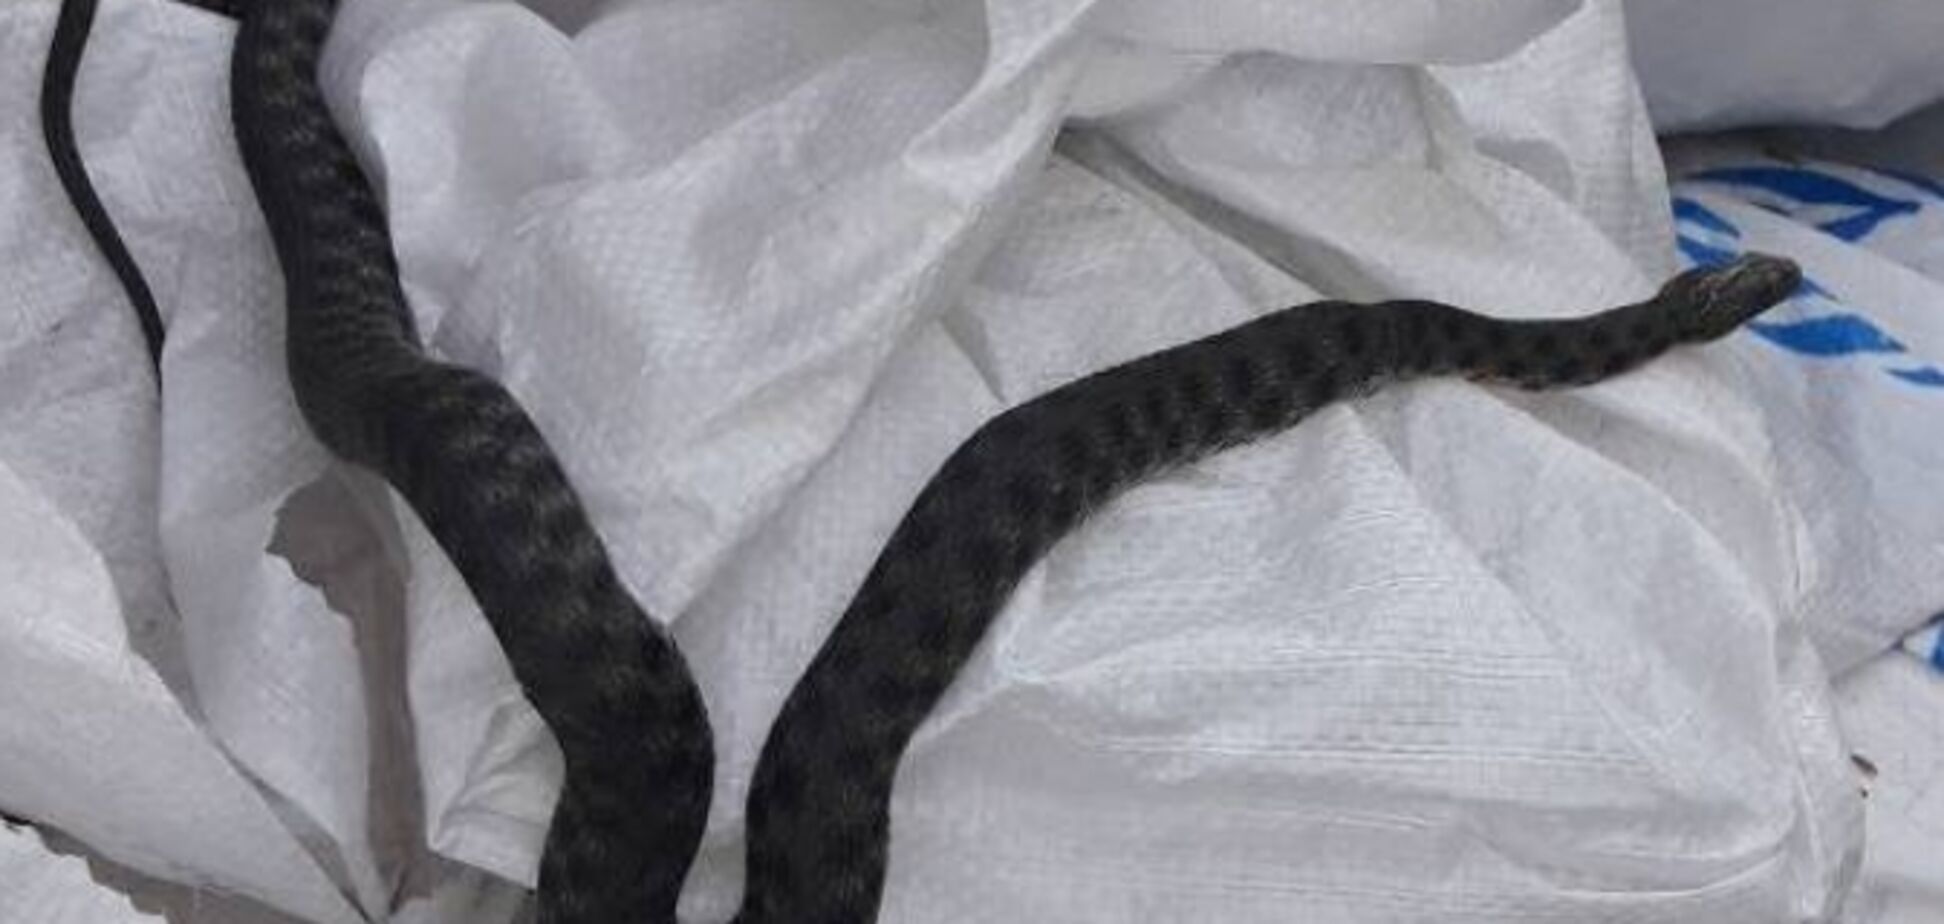 Величезна змія налякала жителів приватного будинку в Херсоні. Фотофакт